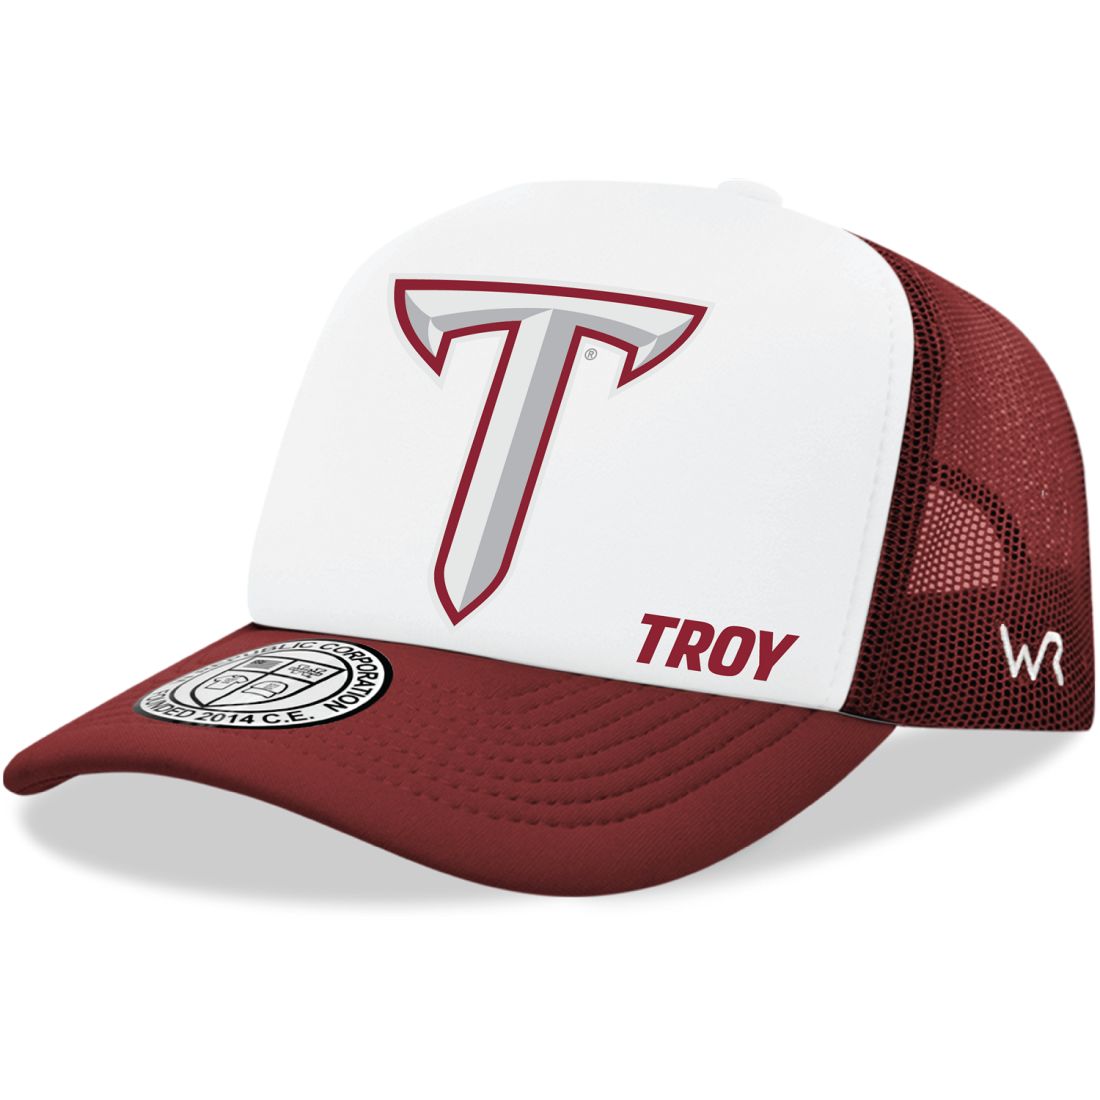 Troy University Trojans Jumbo Foam Trucker Hats